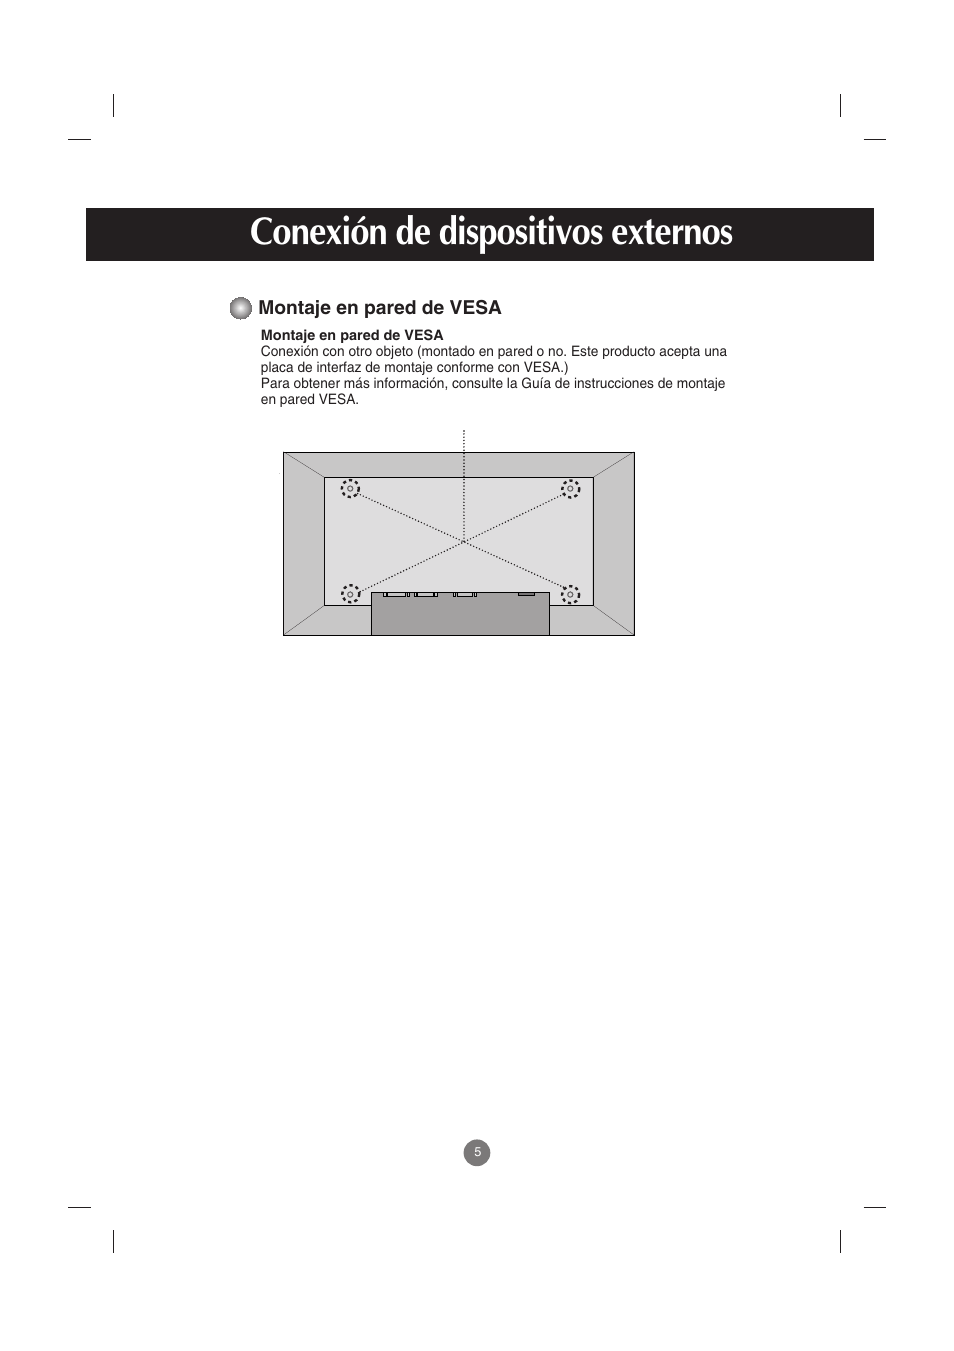 Montaje en pared de vesa, Conexión de dispositivos externos | LG M2900S-BN Manual del usuario | Página 6 / 32